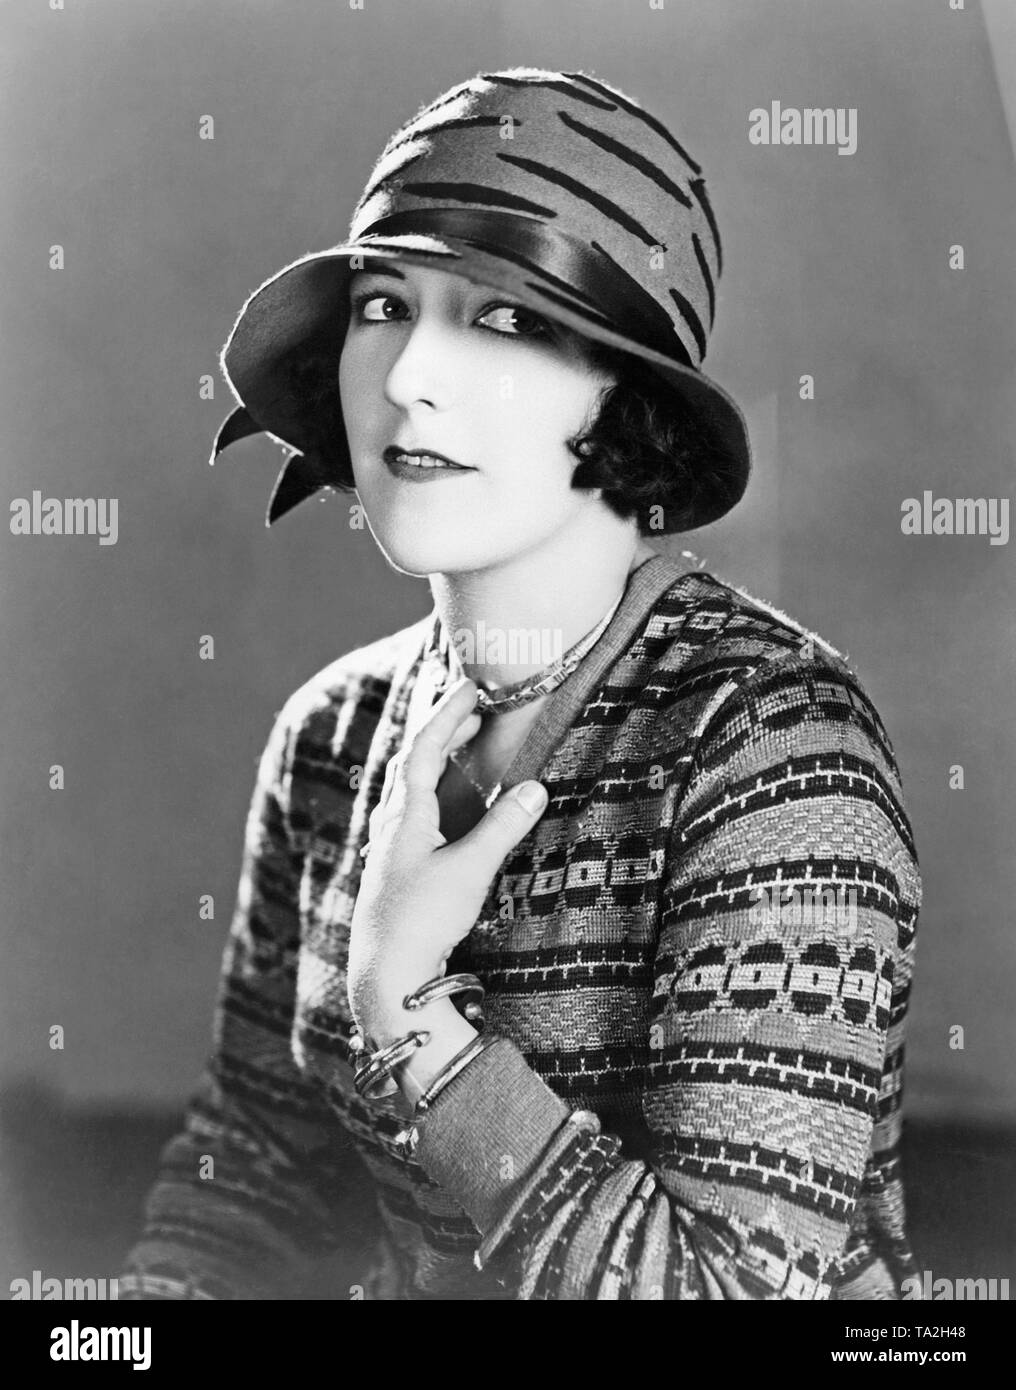 Headgear 1920s Banque de photographies et d'images à haute résolution -  Alamy